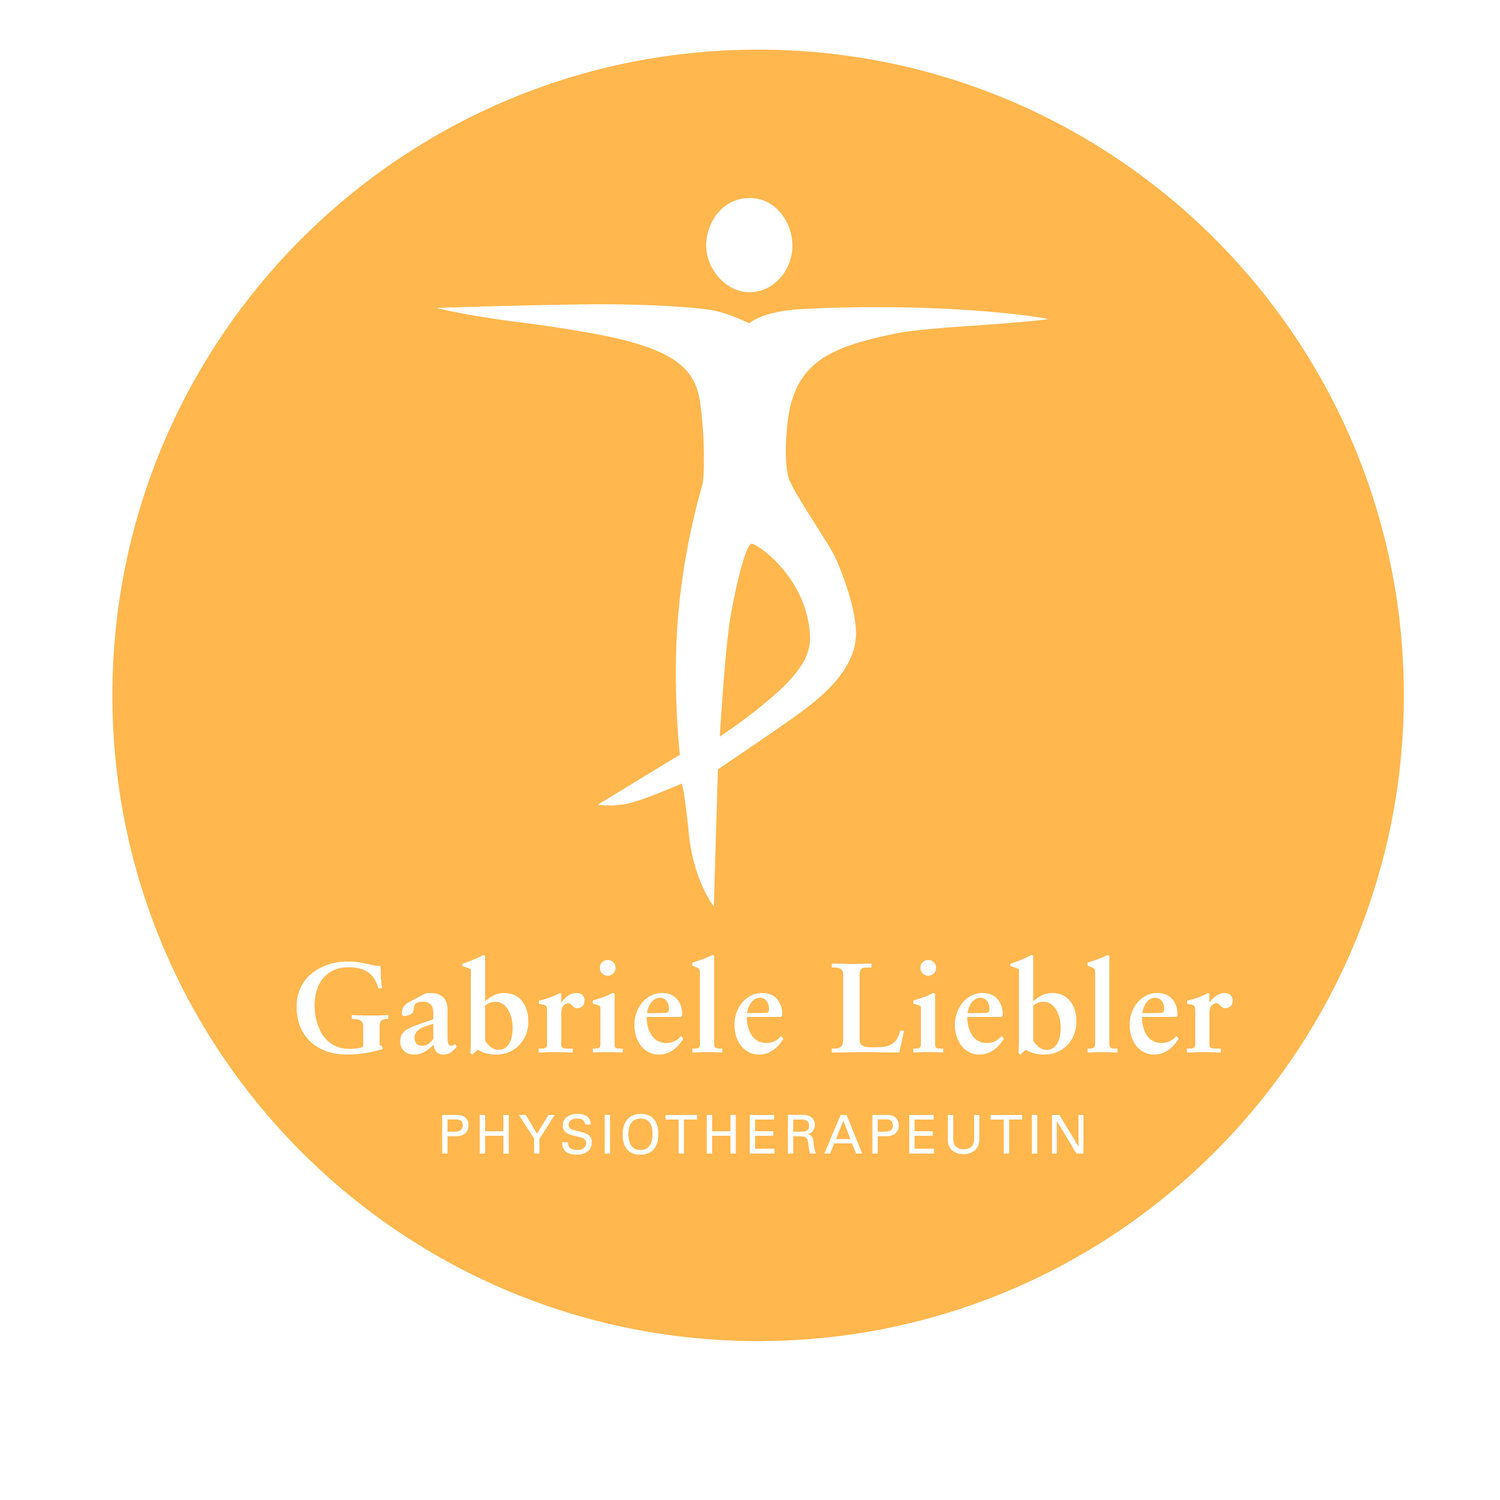 Gabriele Liebler